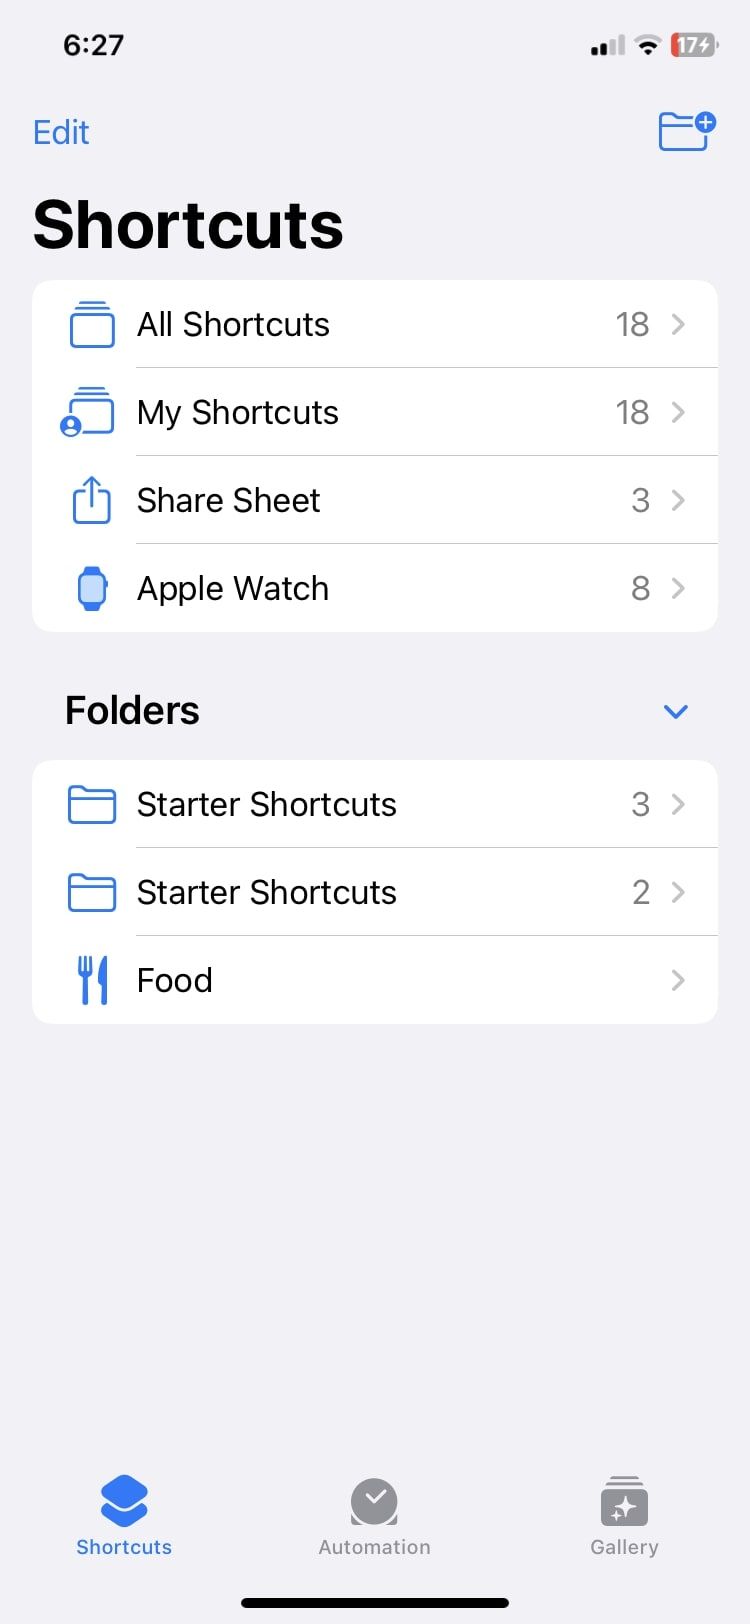 shortcut folders in the Shortcuts app